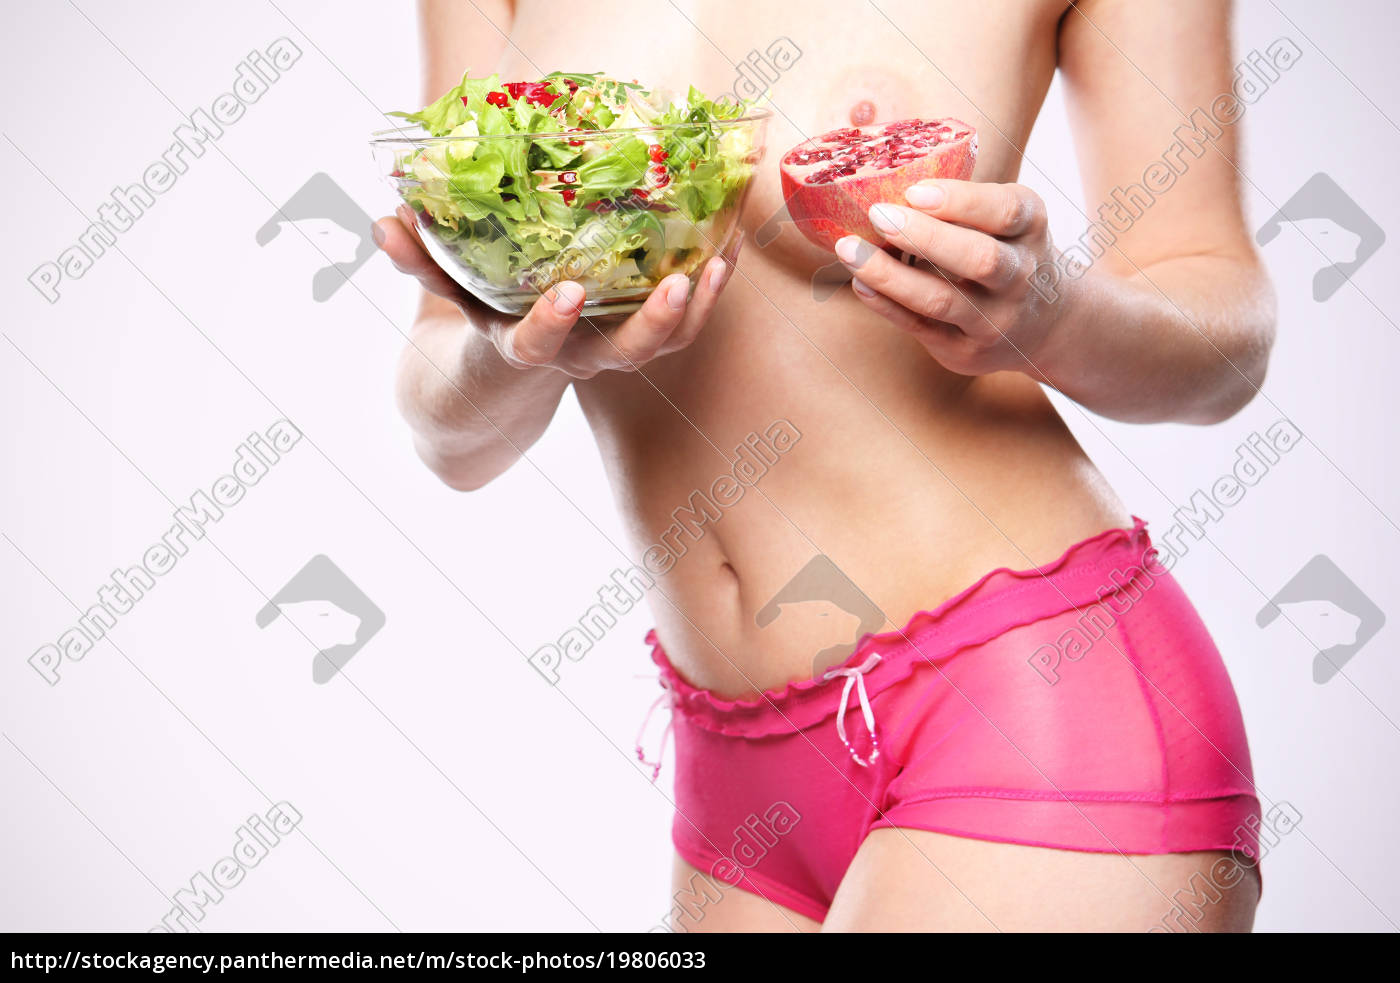 продукты увеличивающие грудь у женщин фото 80